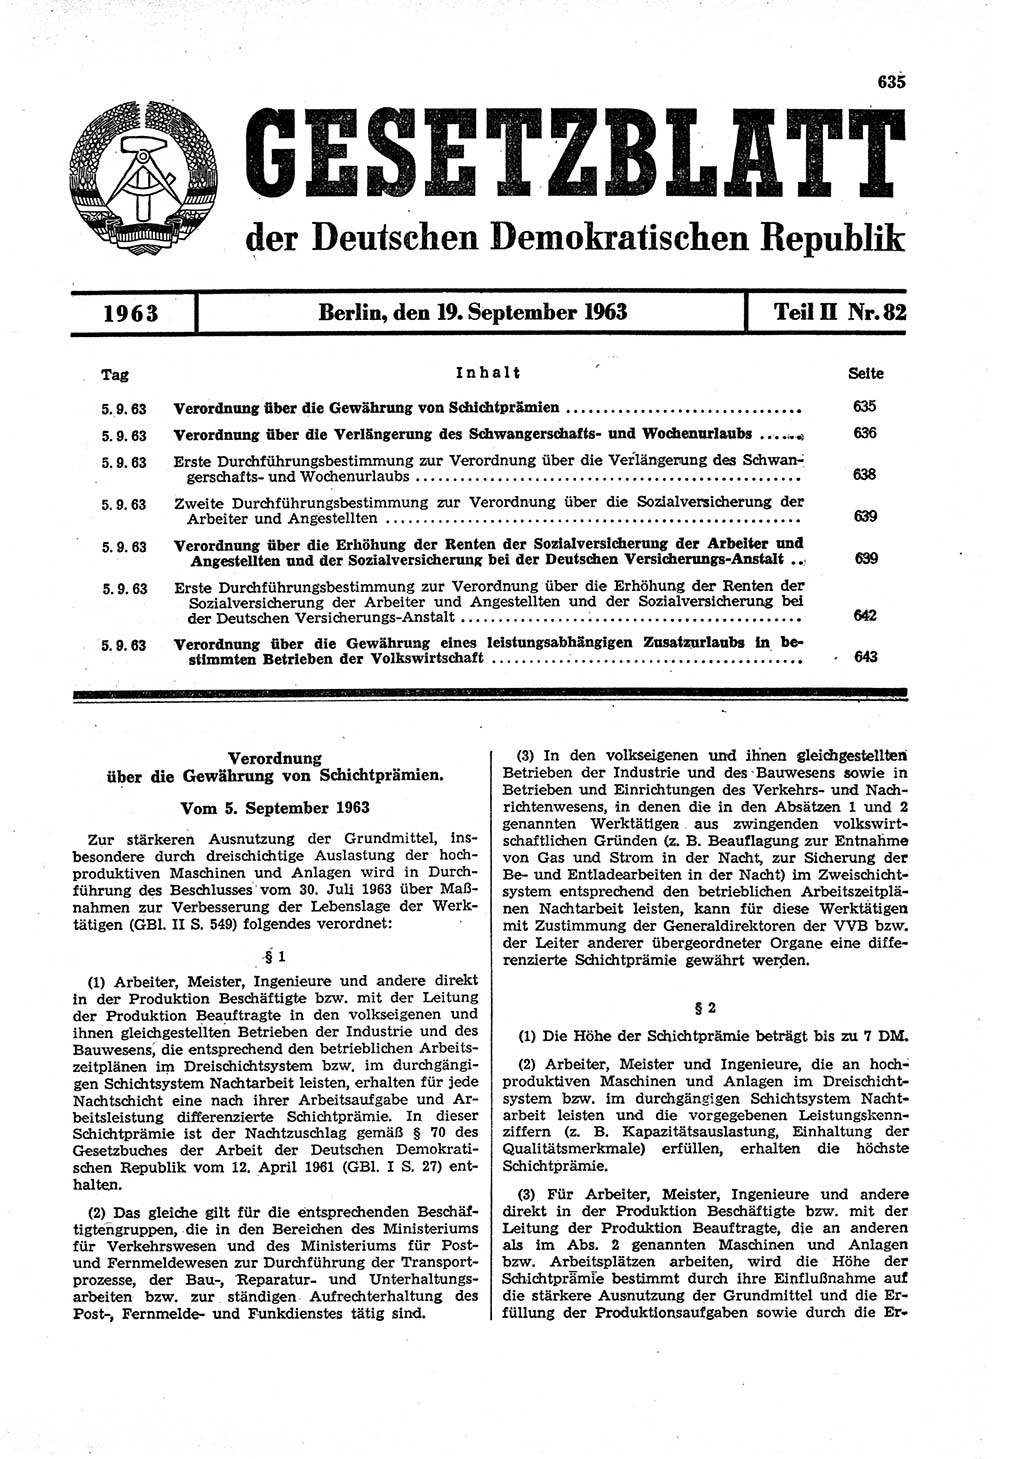 Gesetzblatt (GBl.) der Deutschen Demokratischen Republik (DDR) Teil ⅠⅠ 1963, Seite 635 (GBl. DDR ⅠⅠ 1963, S. 635)